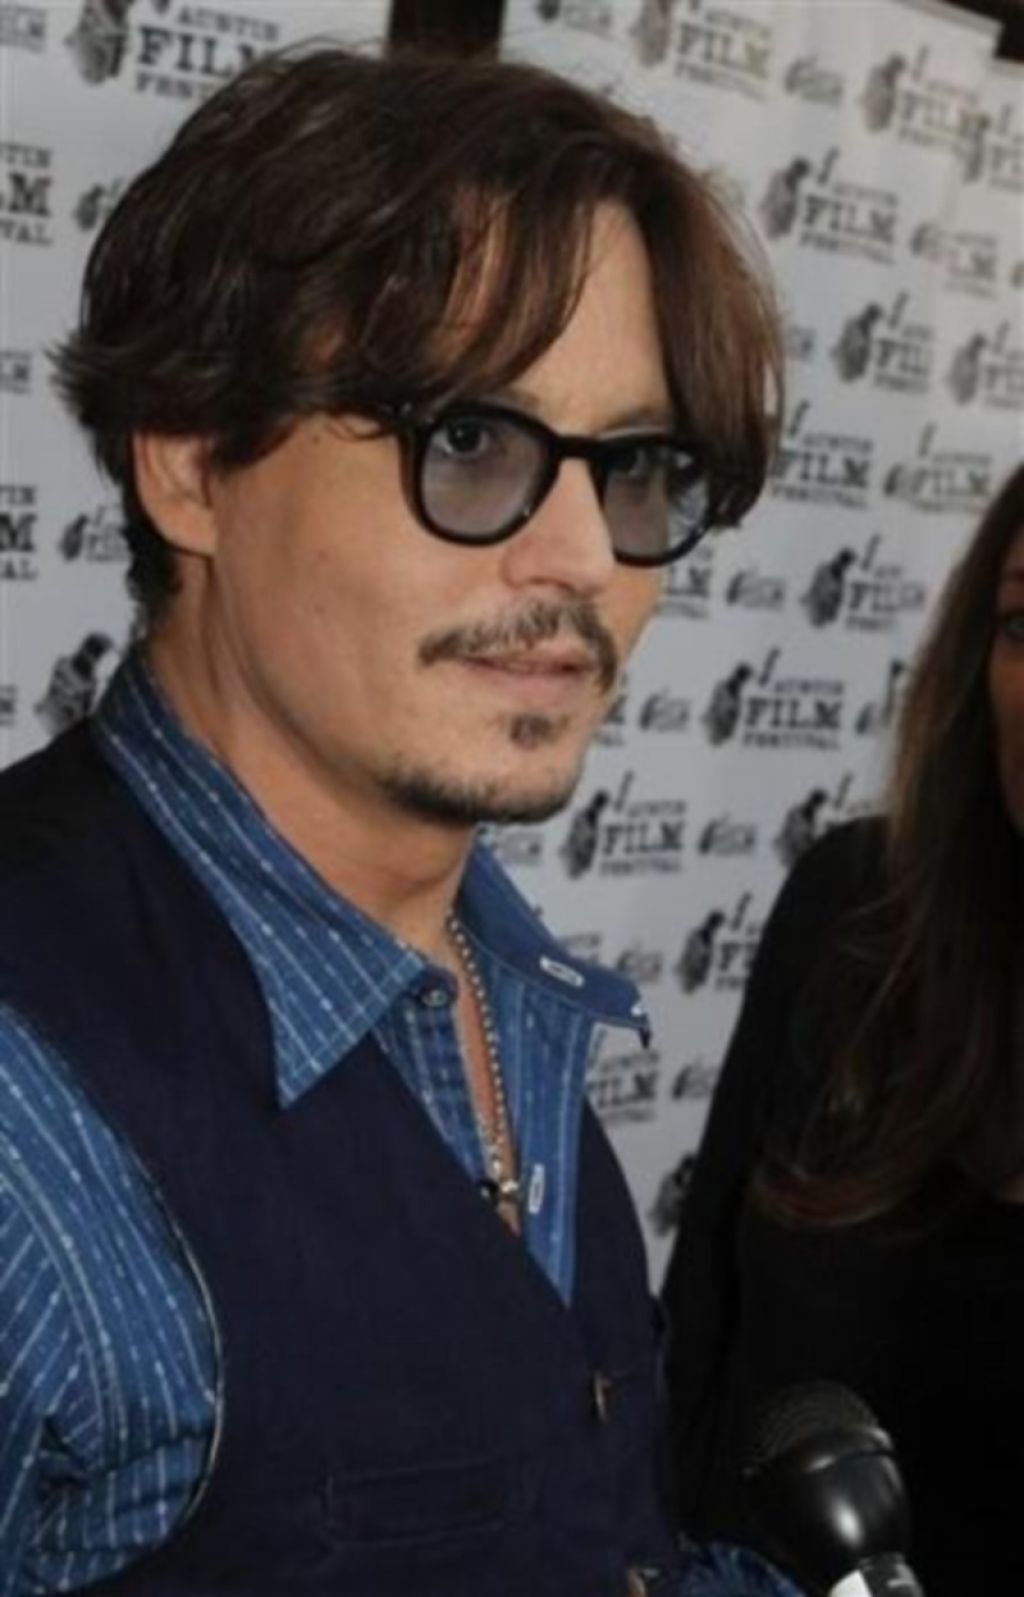 Igralec Johnny Depp ne nosi spodnjic